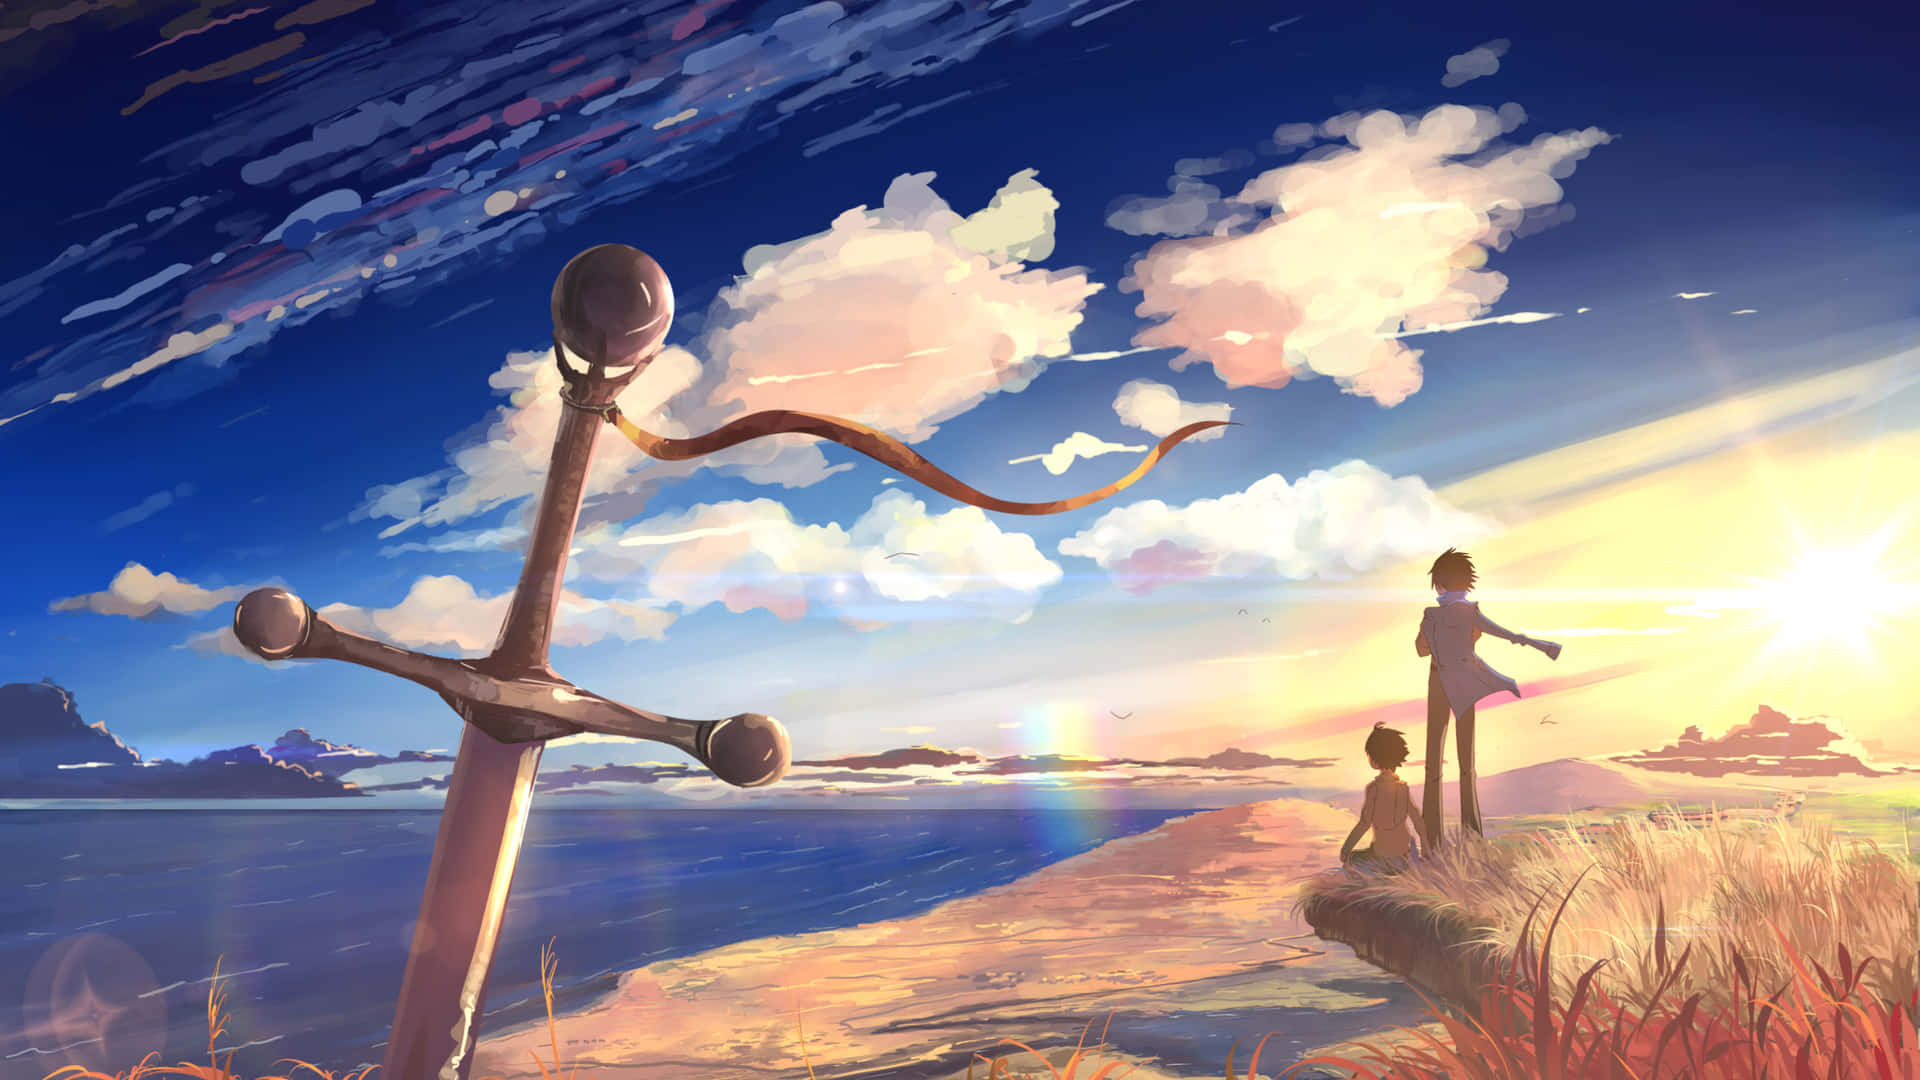 Sunset Swordand Companionship Anime Art.jpg Wallpaper